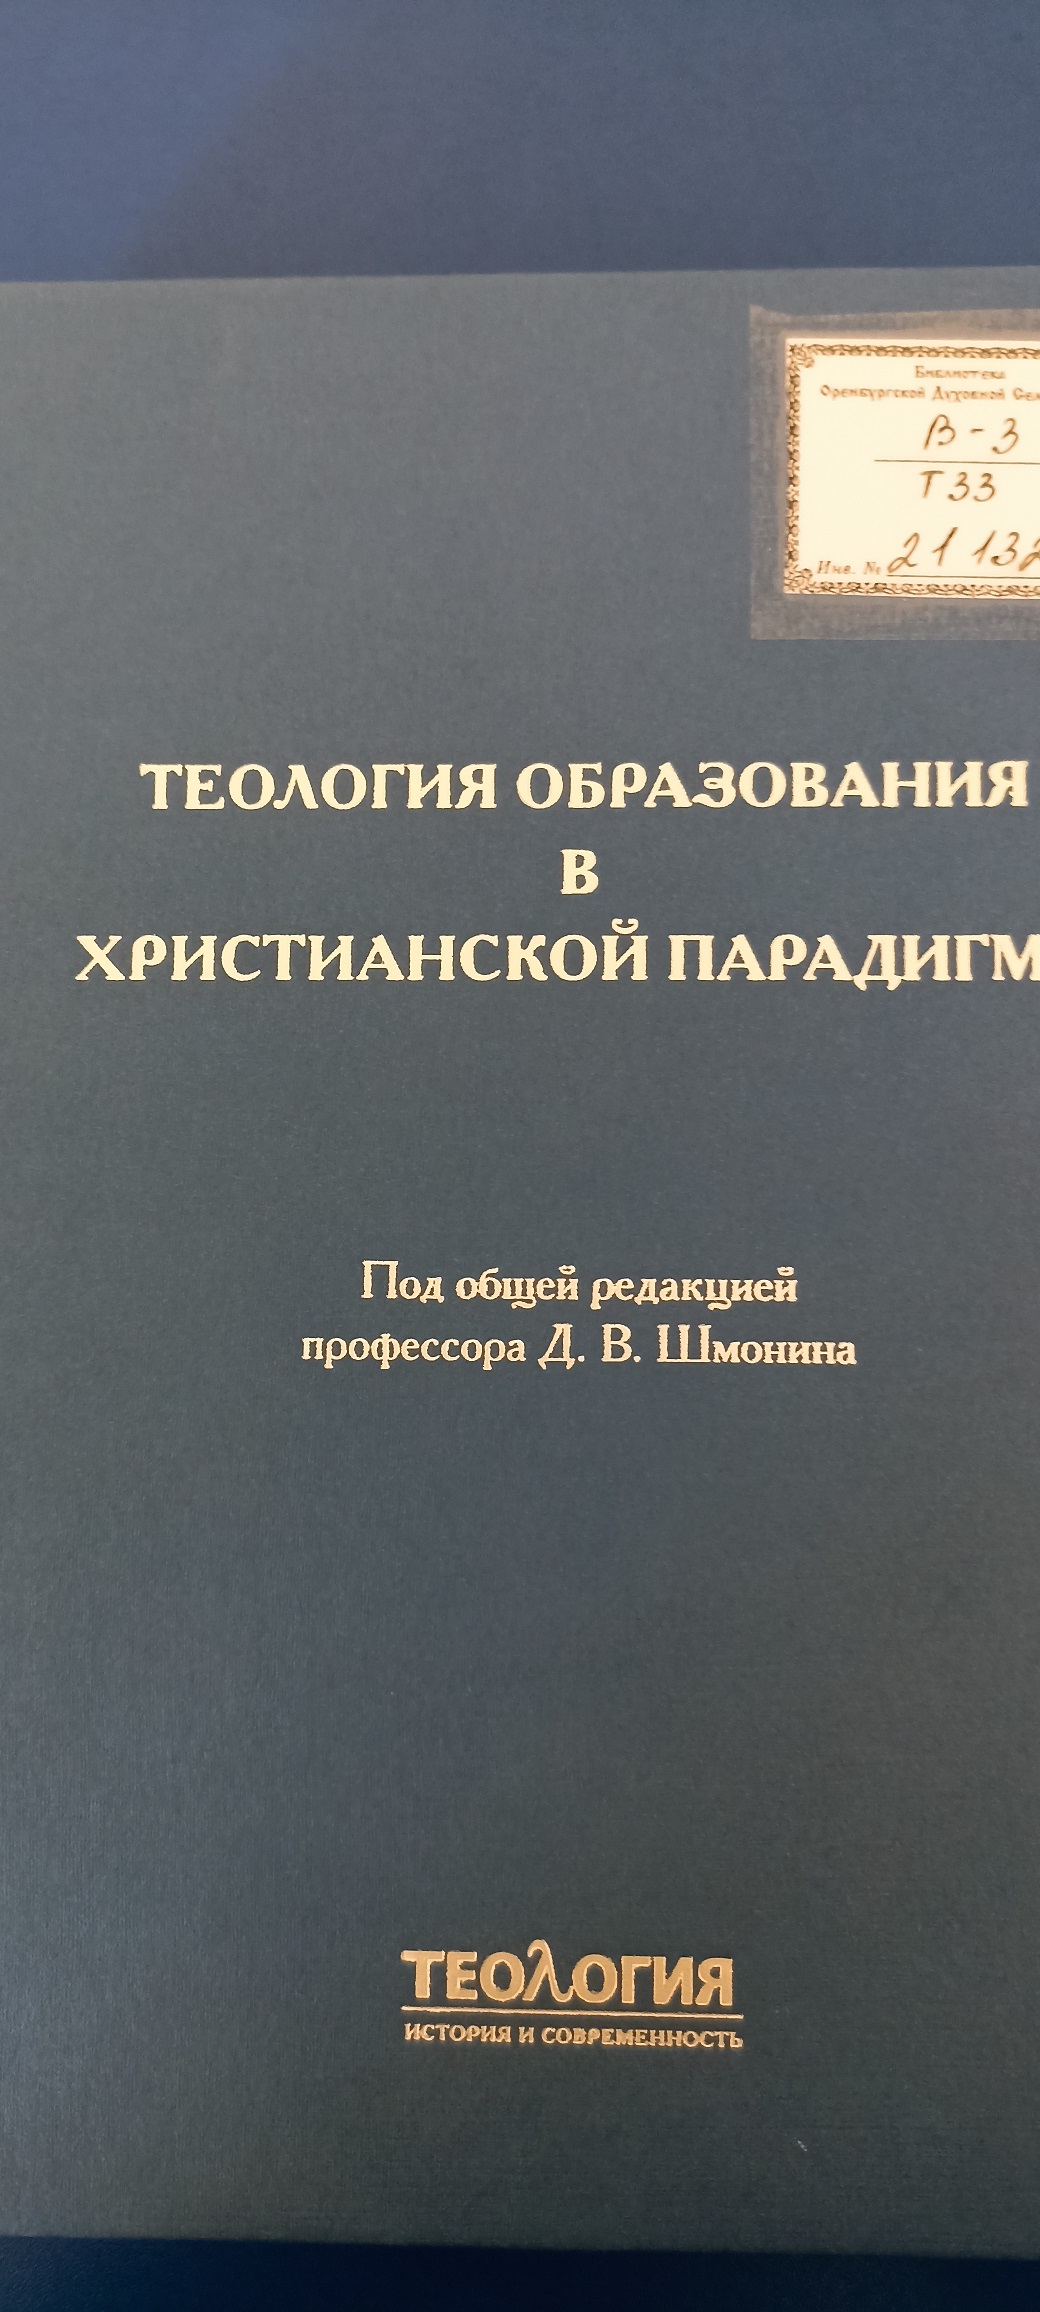 Новинки Издательства Санкт-Петербургской Духовной Академии поступили в библиотеку Семинарии